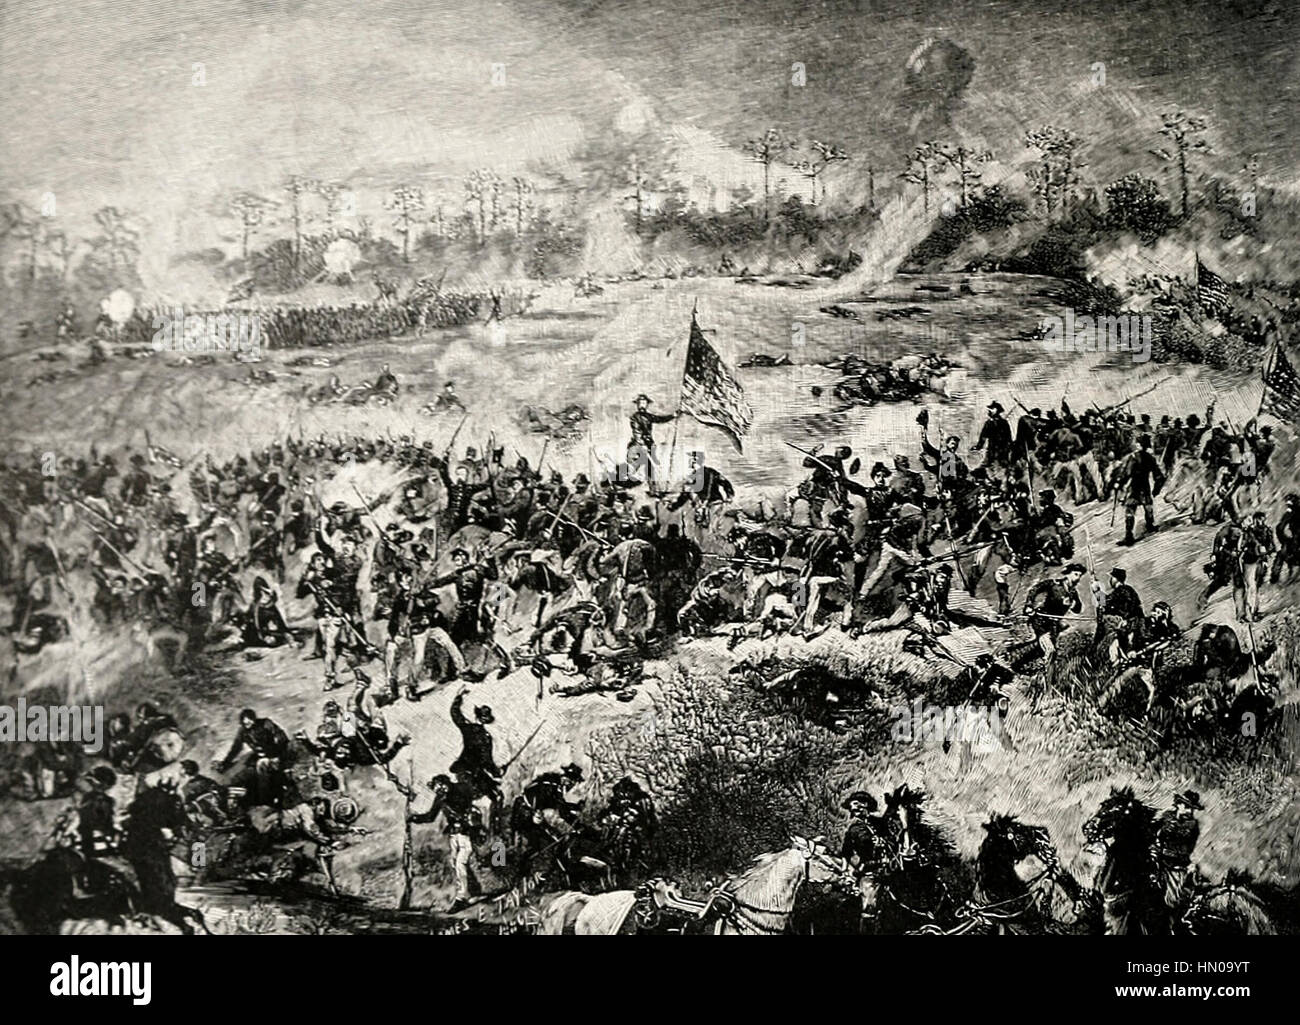 La bataille d'Atlanta, le 22 juillet 1864 - Fuller's Division du 16e Corps, uni pour tenir leur terrain après avoir été ramené de force par la première charge de la Confédération dans leur attaque de flanc Banque D'Images